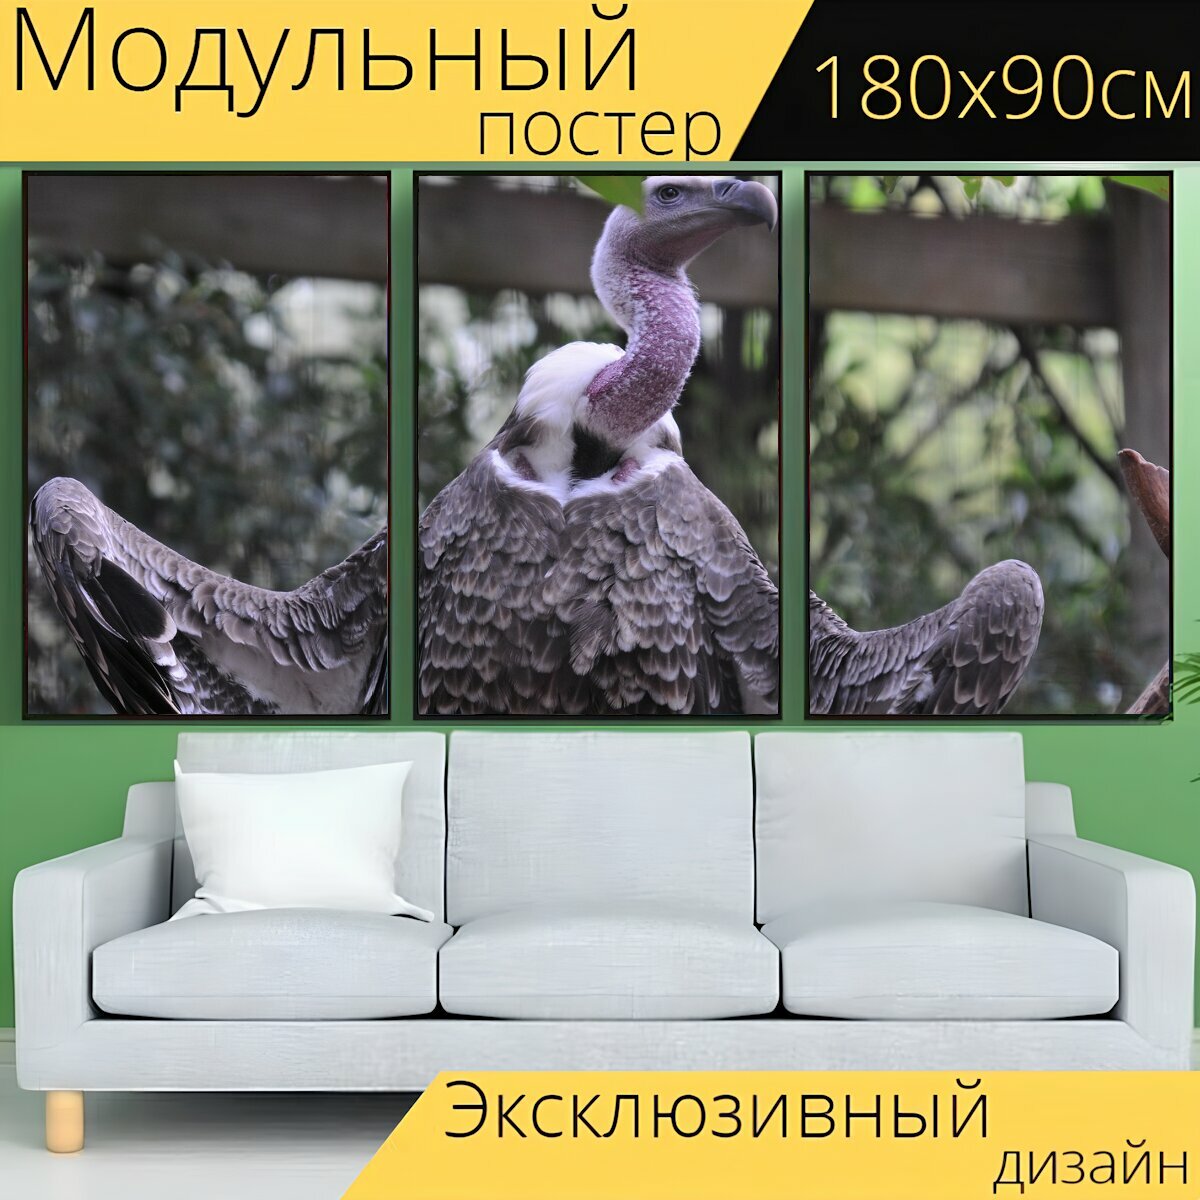 Модульный постер "Стервятник, птицы, стервятники" 180 x 90 см. для интерьера